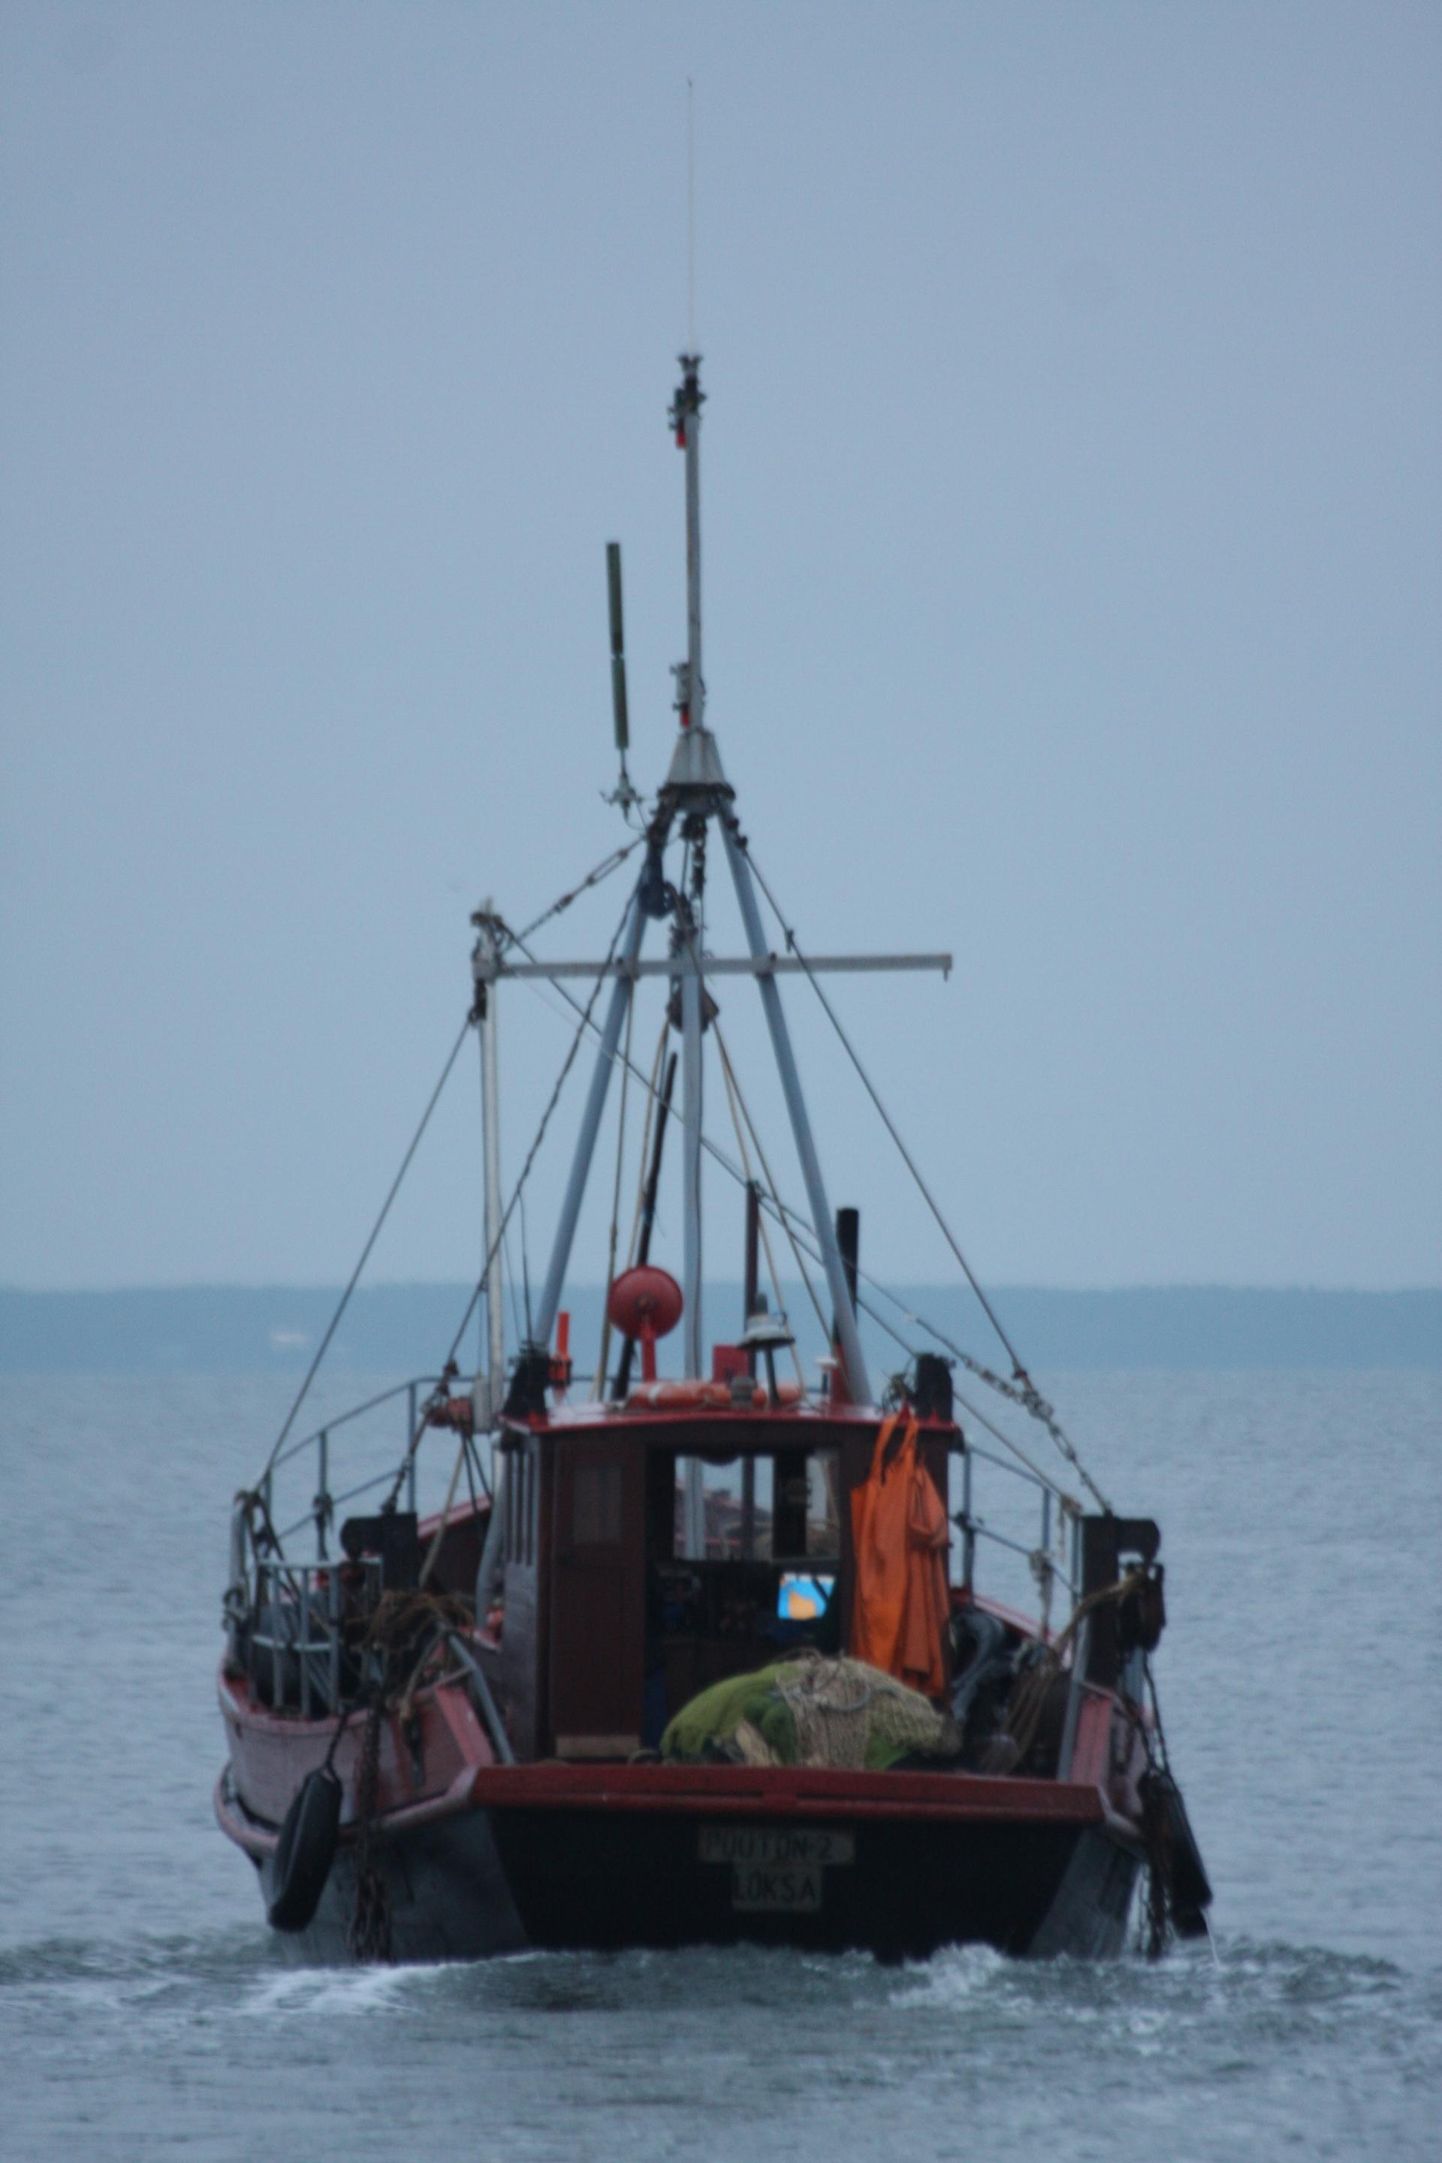 Läänemere traalpüügil lõpeb püügihooaeg ­aprillis-mais ja sügisene traalpüük ­algab augustis-septembris.

 